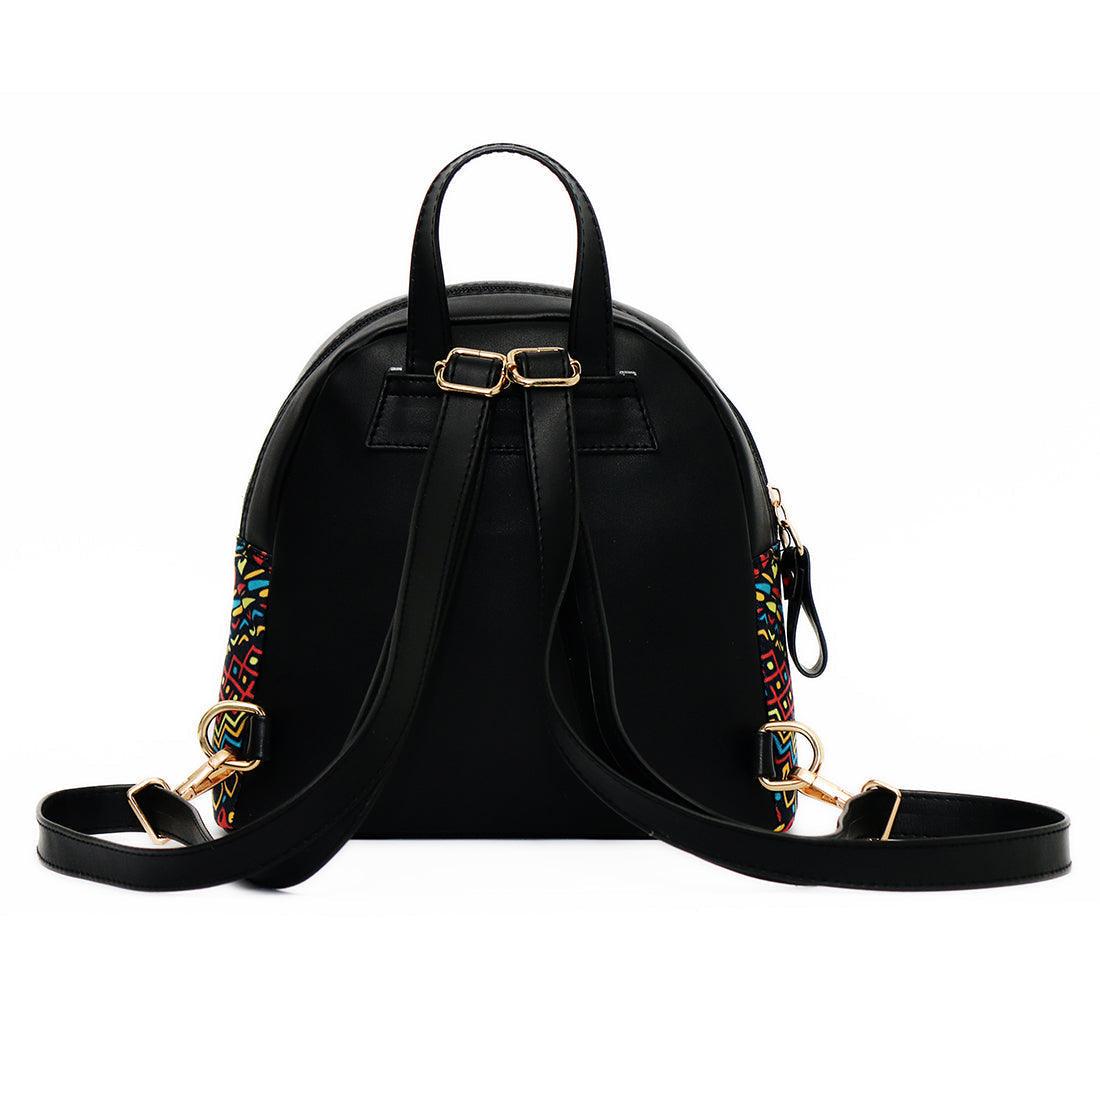 Black Mini Backpack Brunette Beauty - CANVAEGYPT